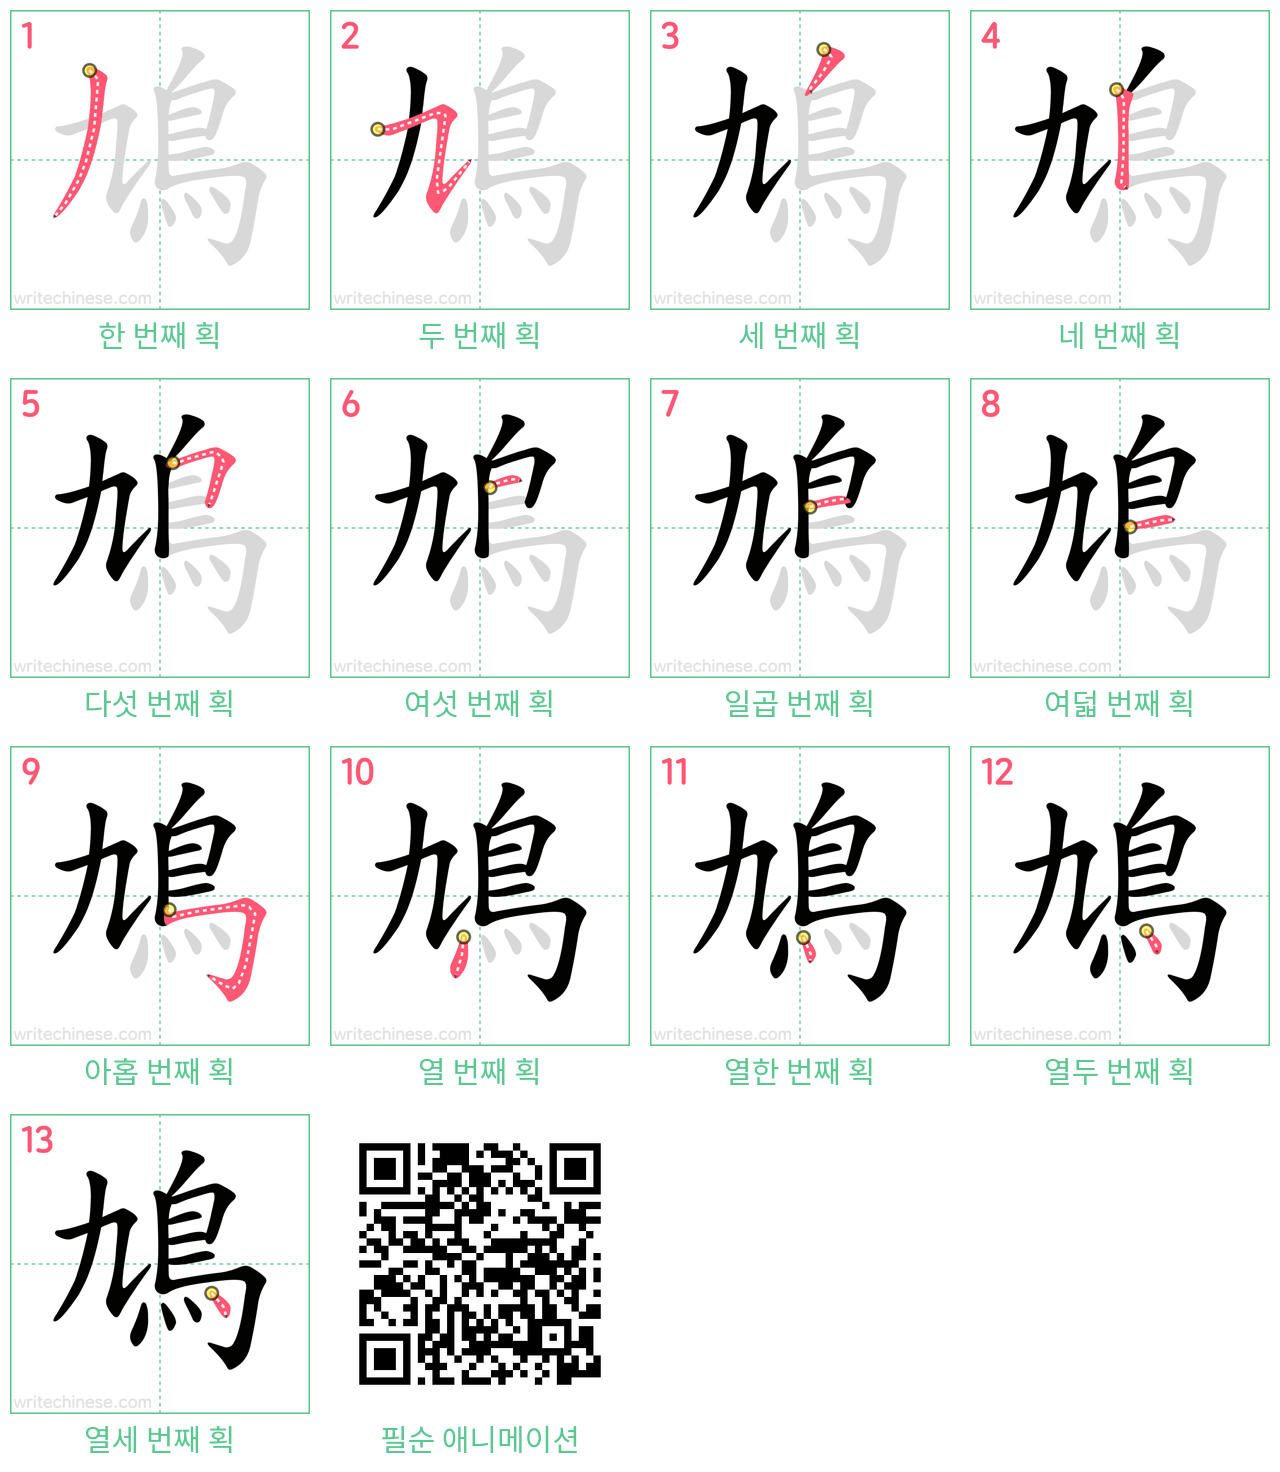 鳩 step-by-step stroke order diagrams